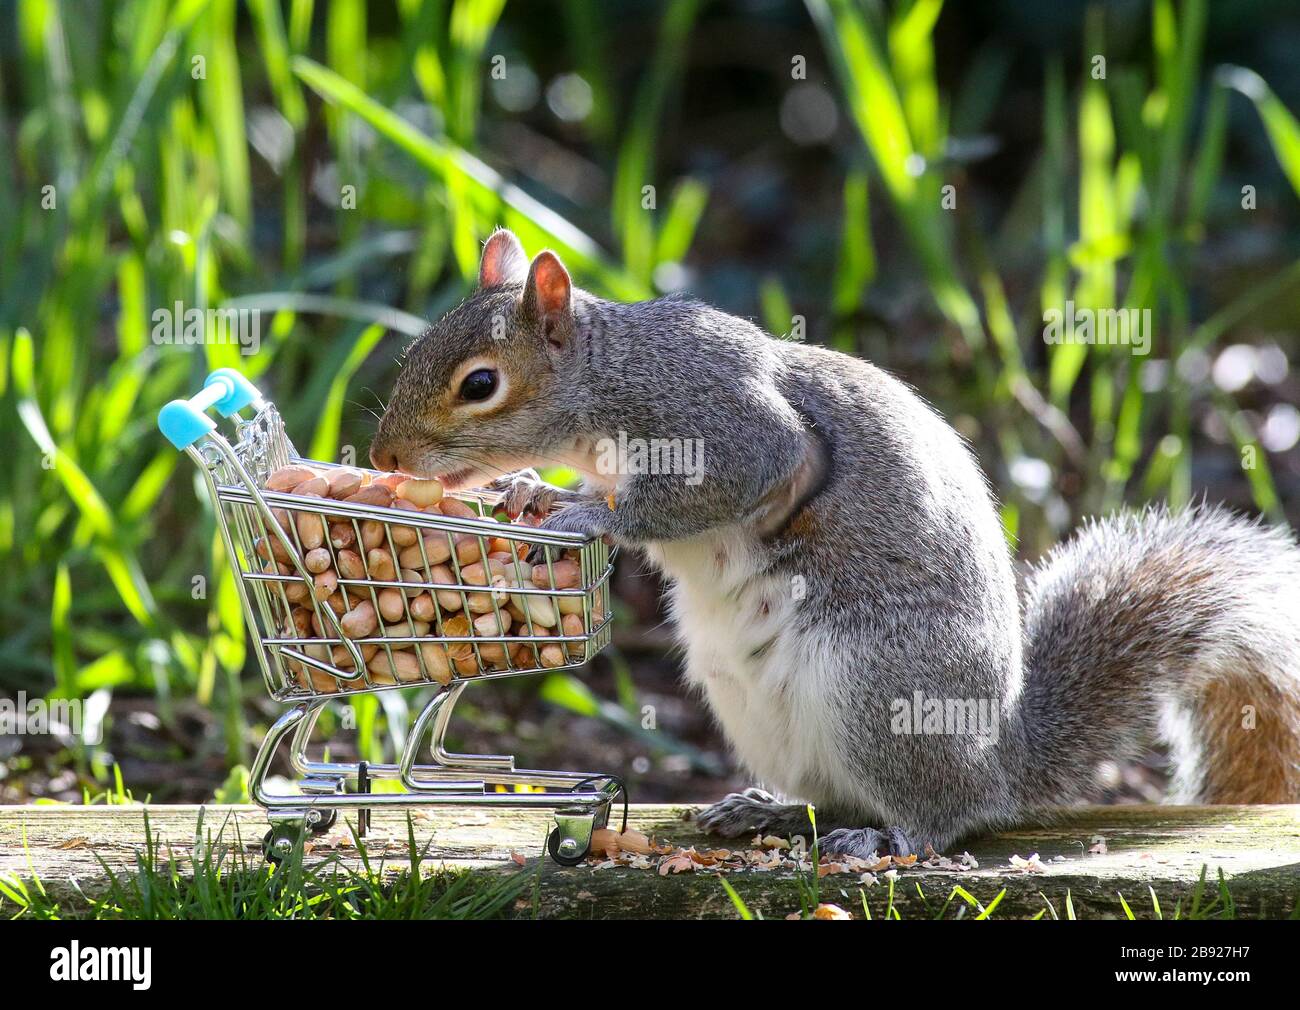 Southampton, Hampshire. März 2020. UK Wetter: Ein Eichhörnchen, das Nüsse in einem sonnigen Garten hinter dem Haus vorrattet. Stockfoto